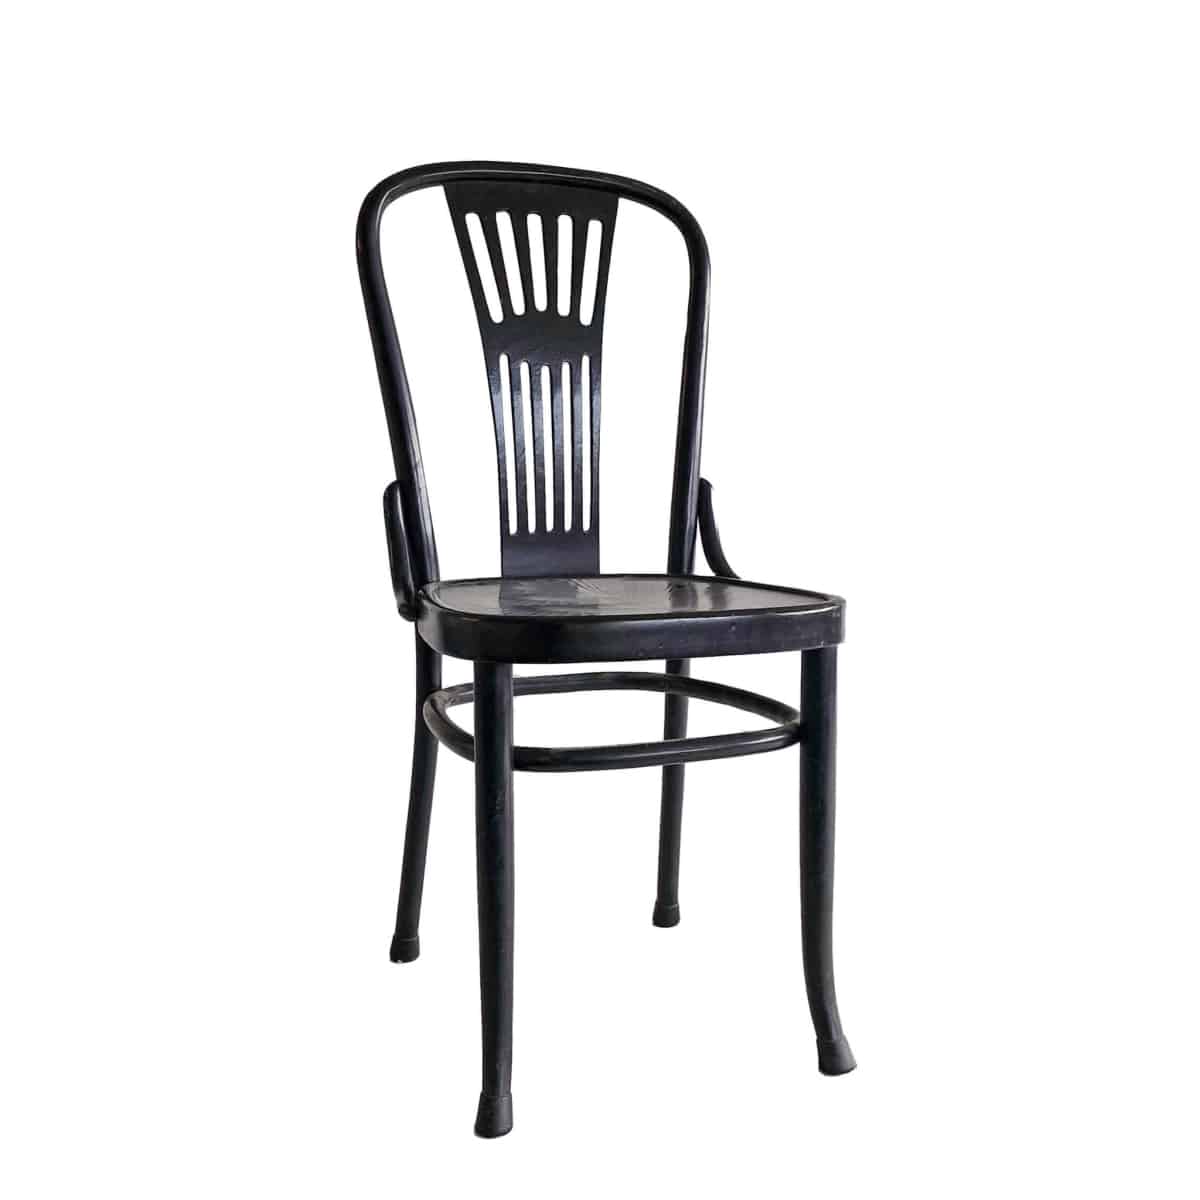 Beg Berri Vooruitgang Retro Thonet stoelen zwart - Super Seat